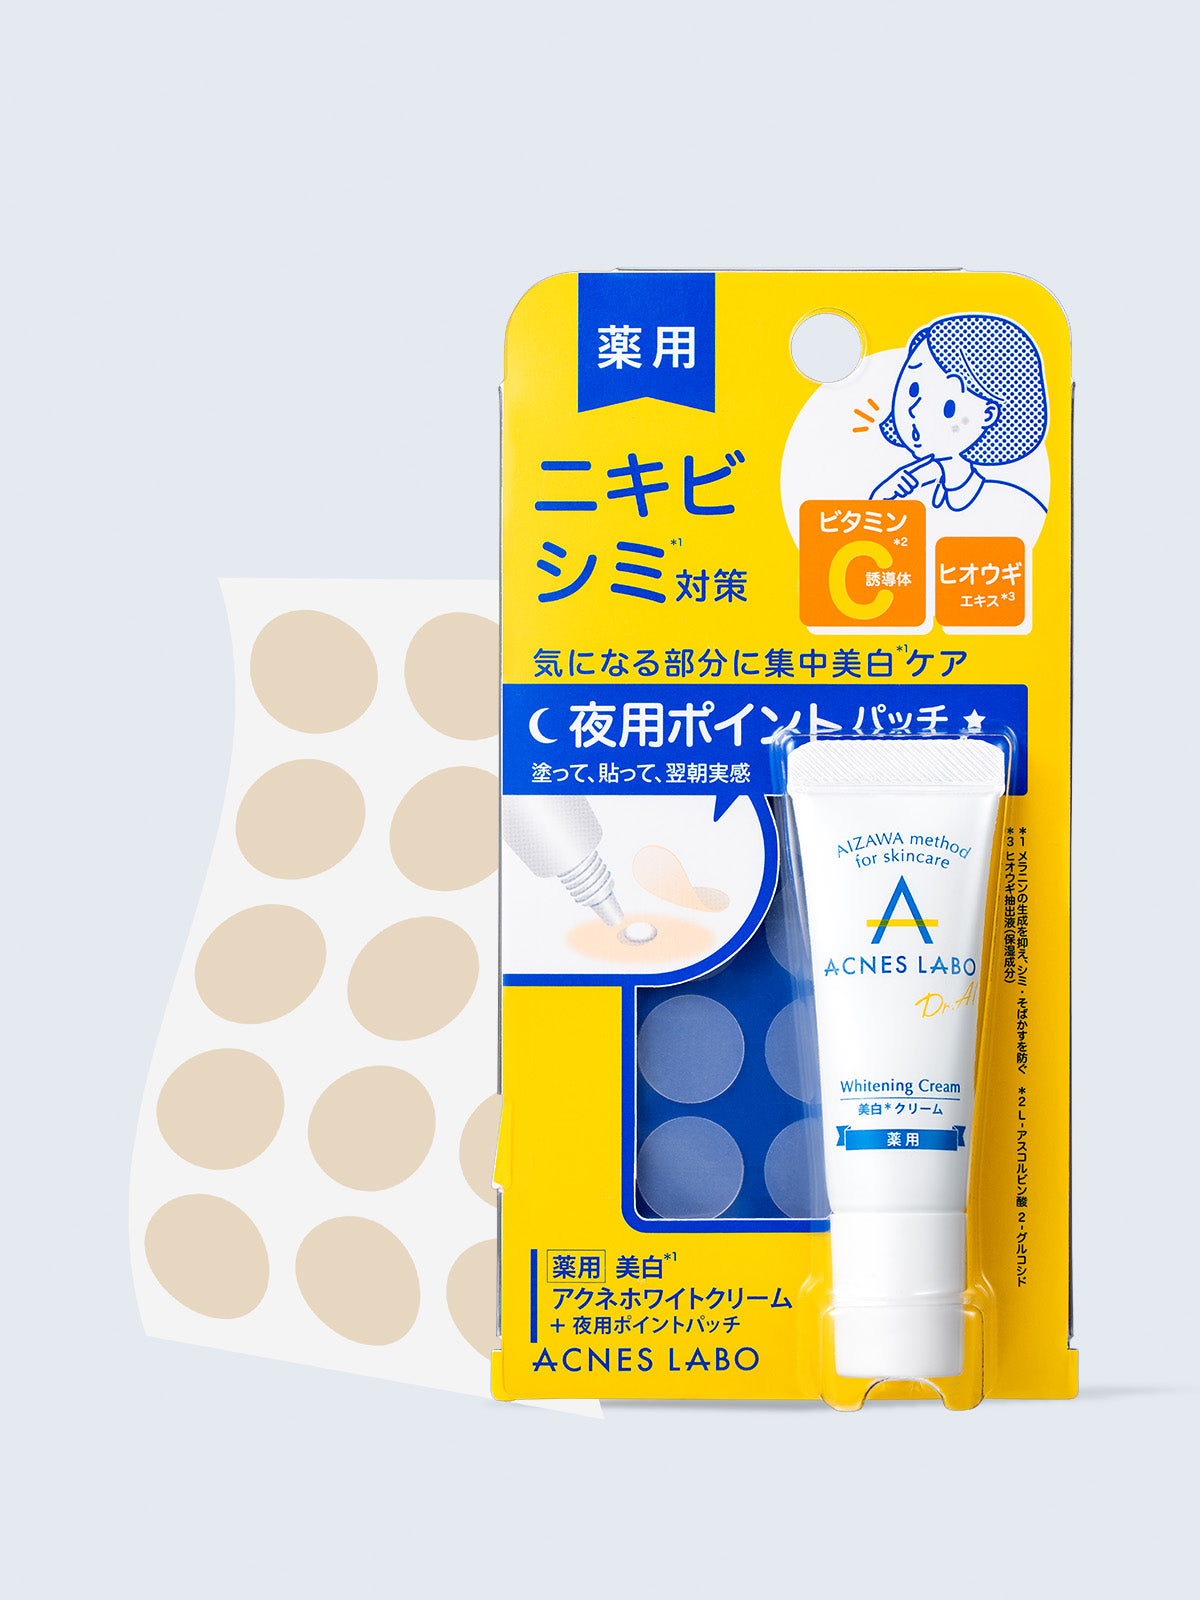 【医薬部外品】薬用 美白 ホワイトクリーム [シミ・アクネ] パッチ付 アクネスラボ 7g